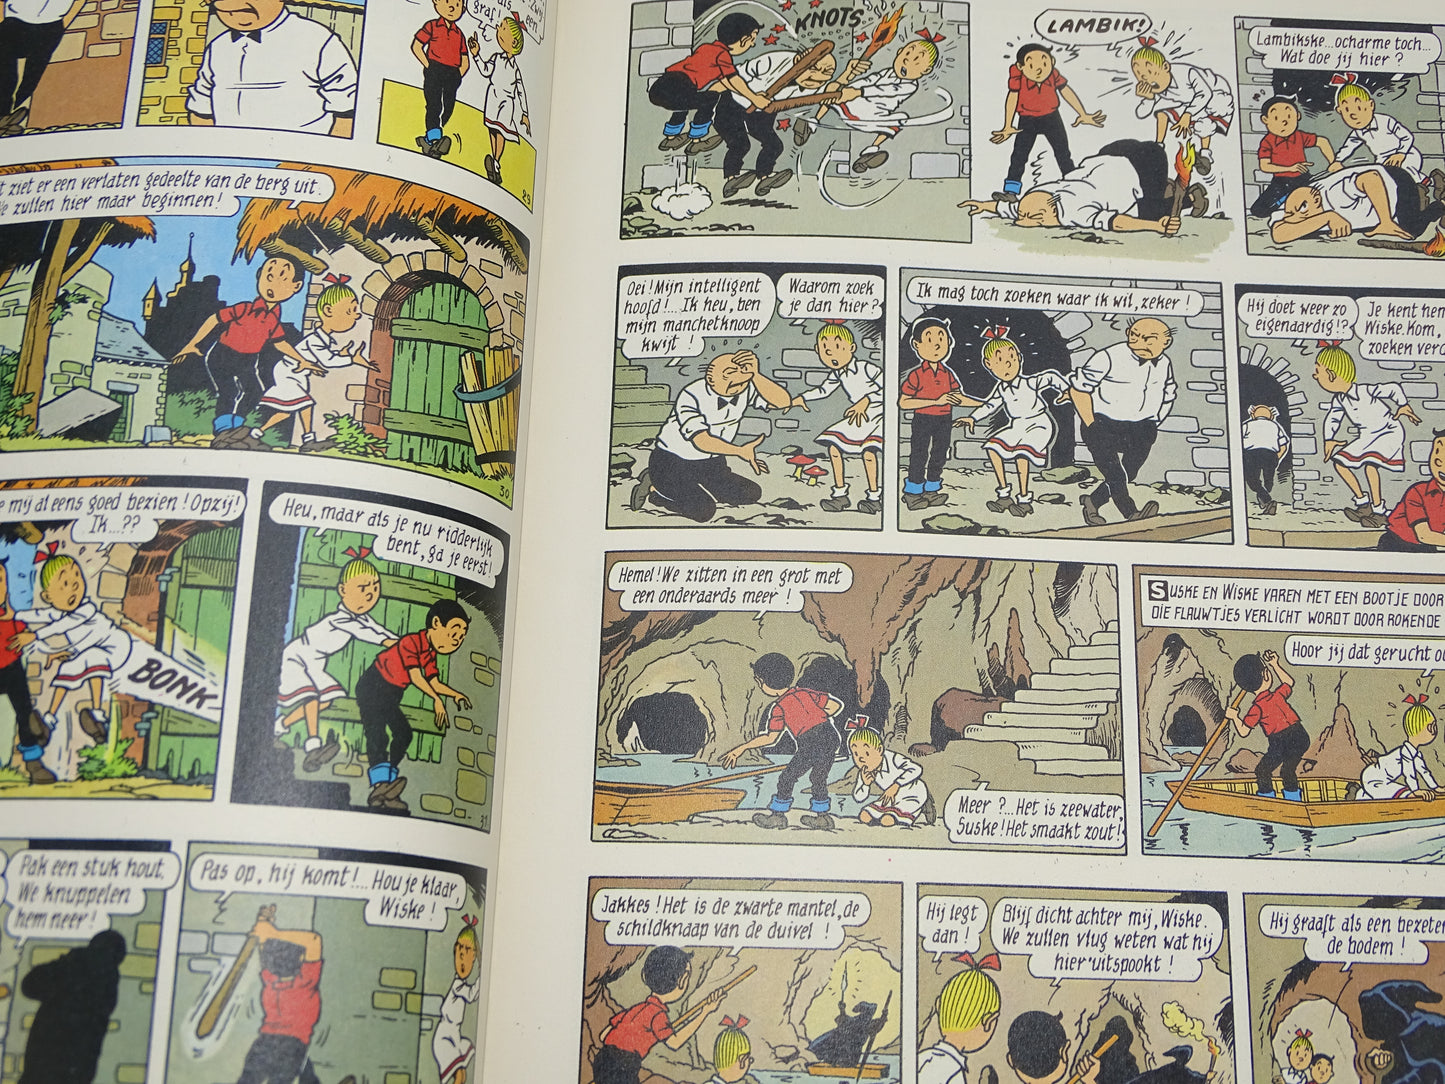 Strip: Suske En Wiske, Het Verloren Zwaard, GB / De Beukelaer, 1995